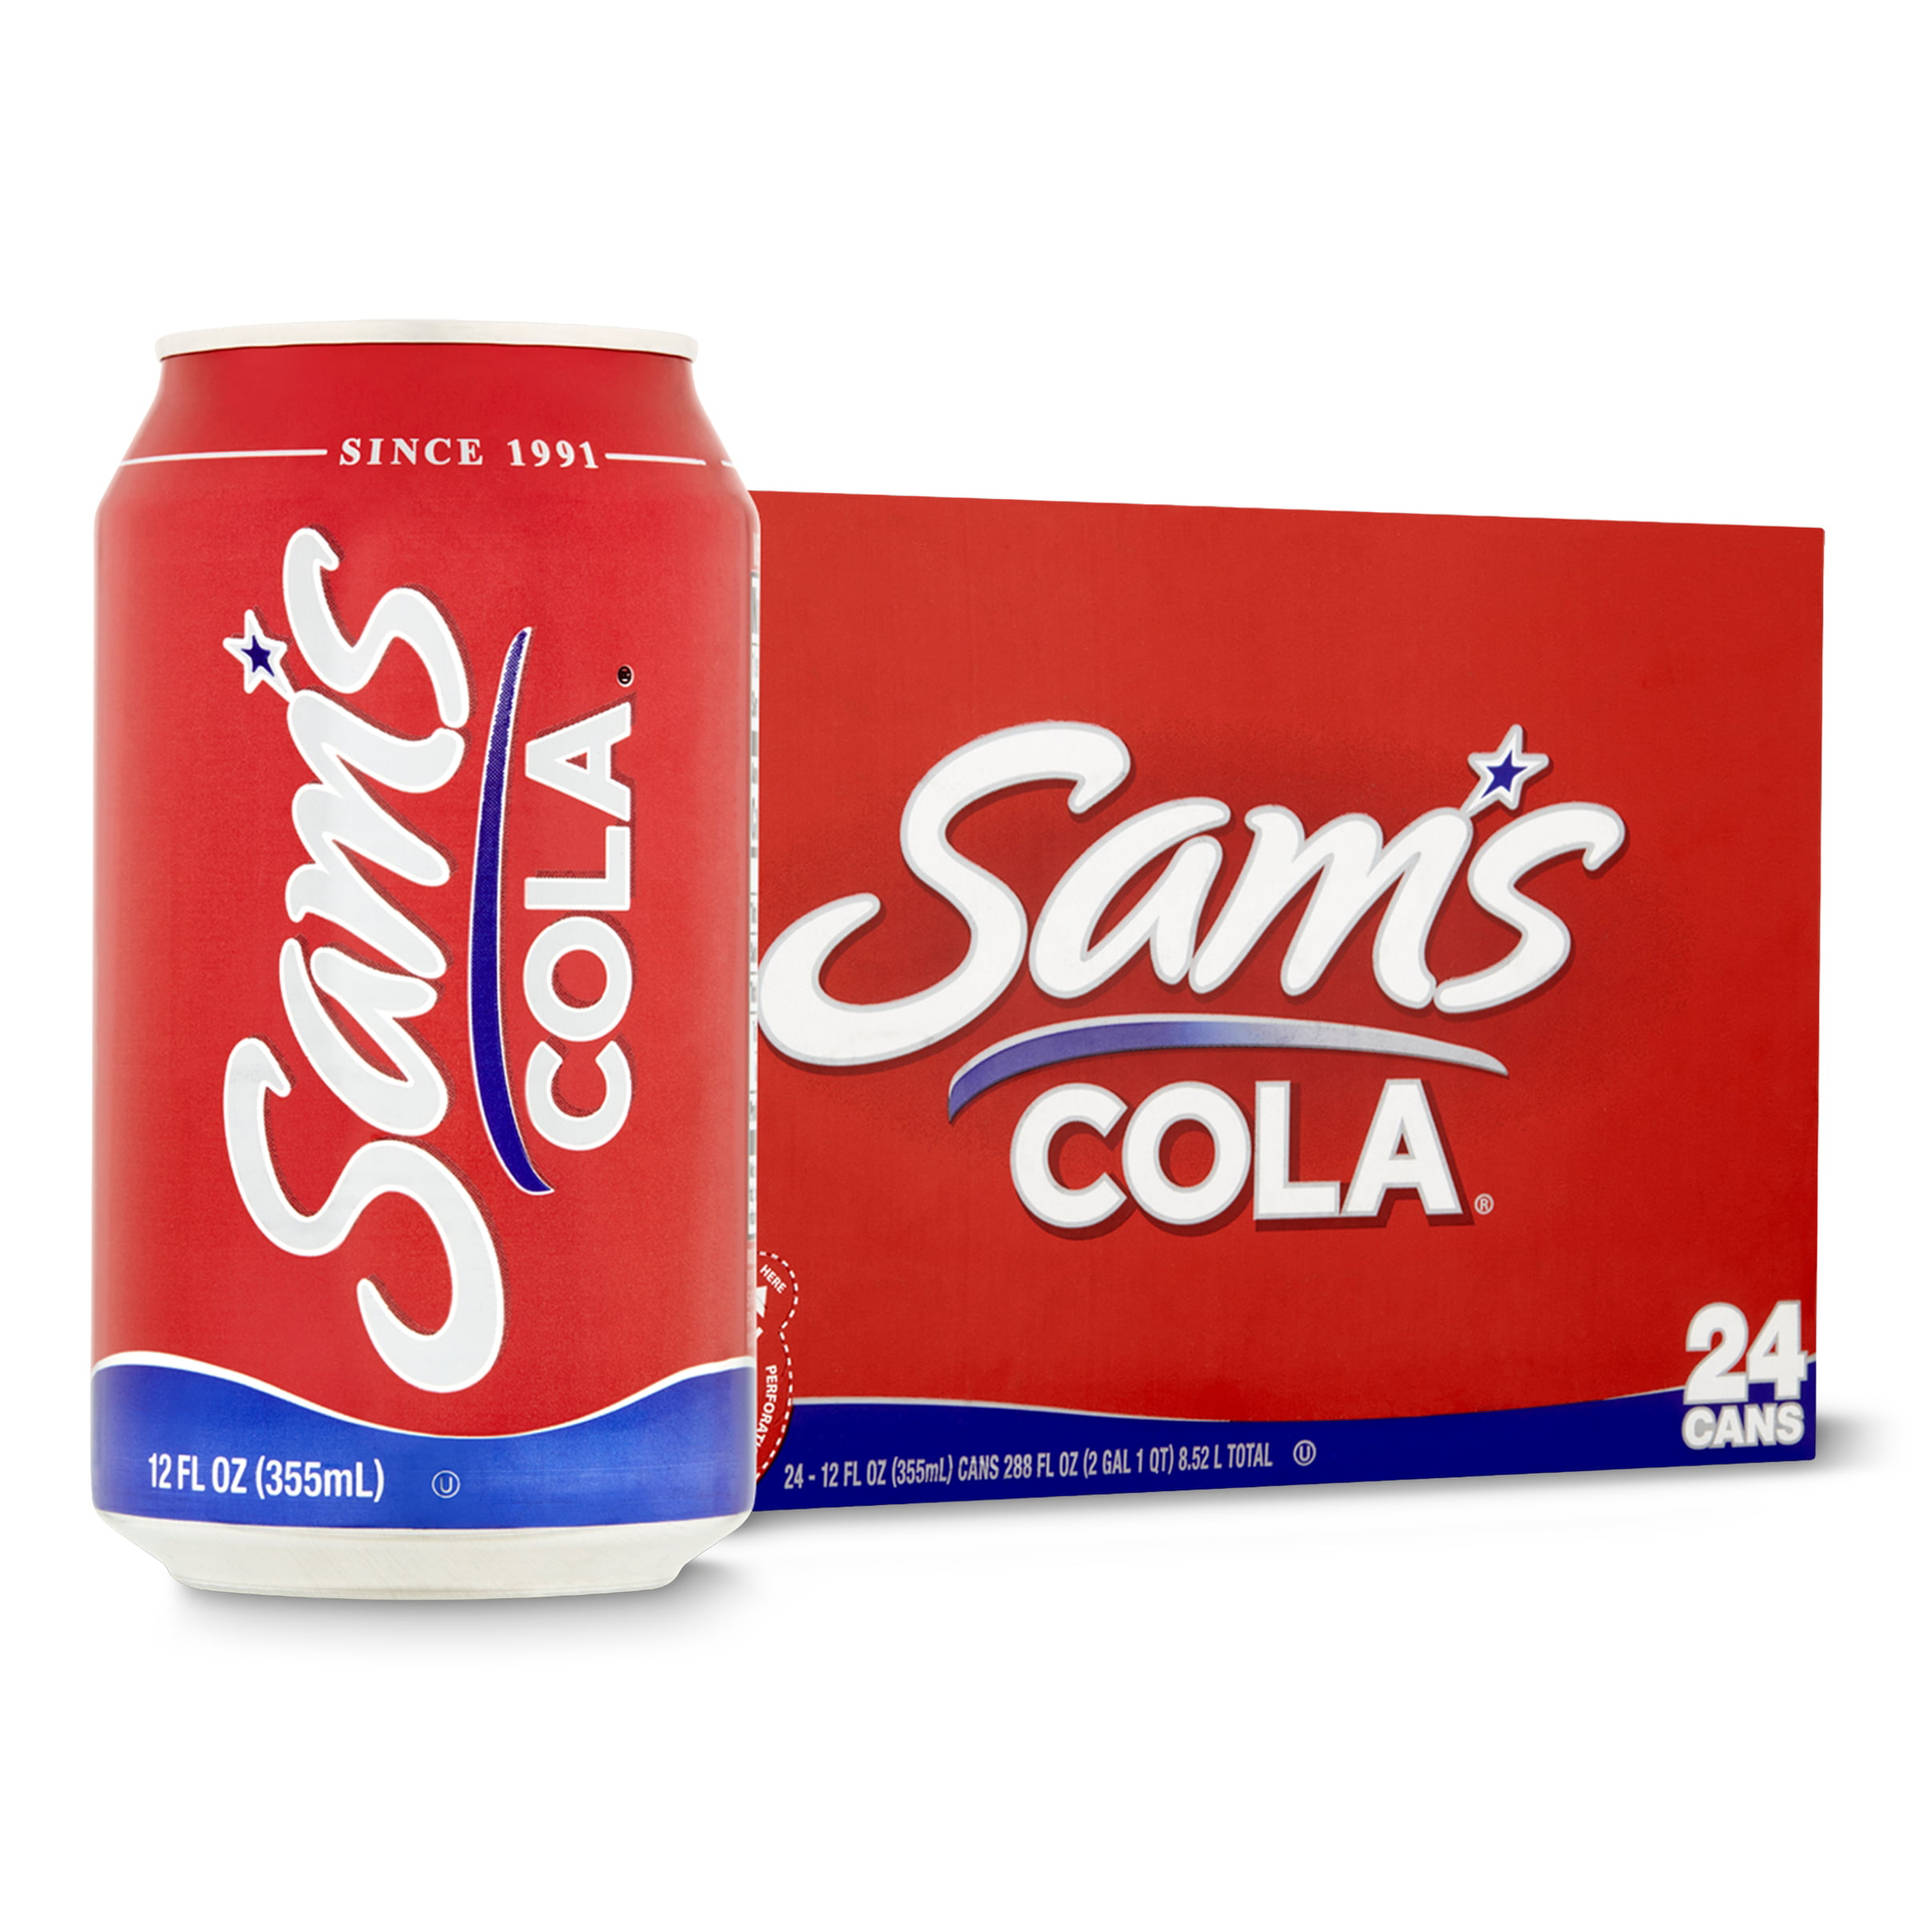 Speichernsie Sam's Cola-soda Im Lebensmittelgeschäft Save A Lot. Wallpaper